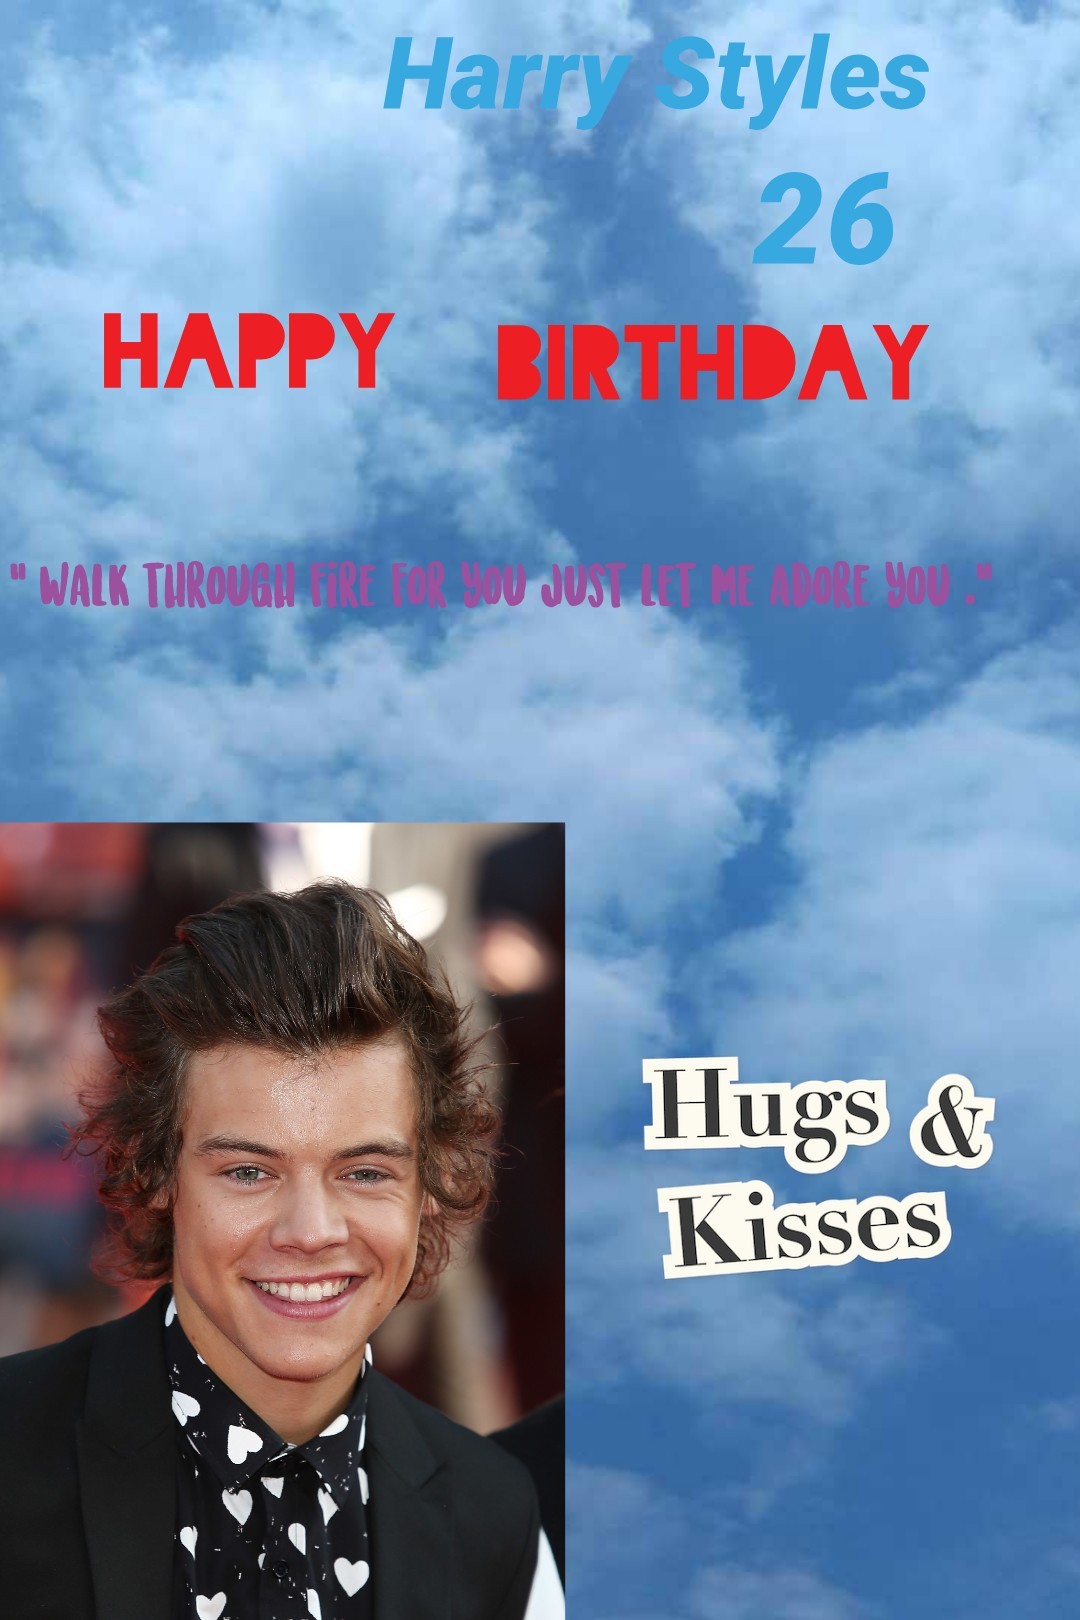 It is Harry's birthday ❤❤❤❤